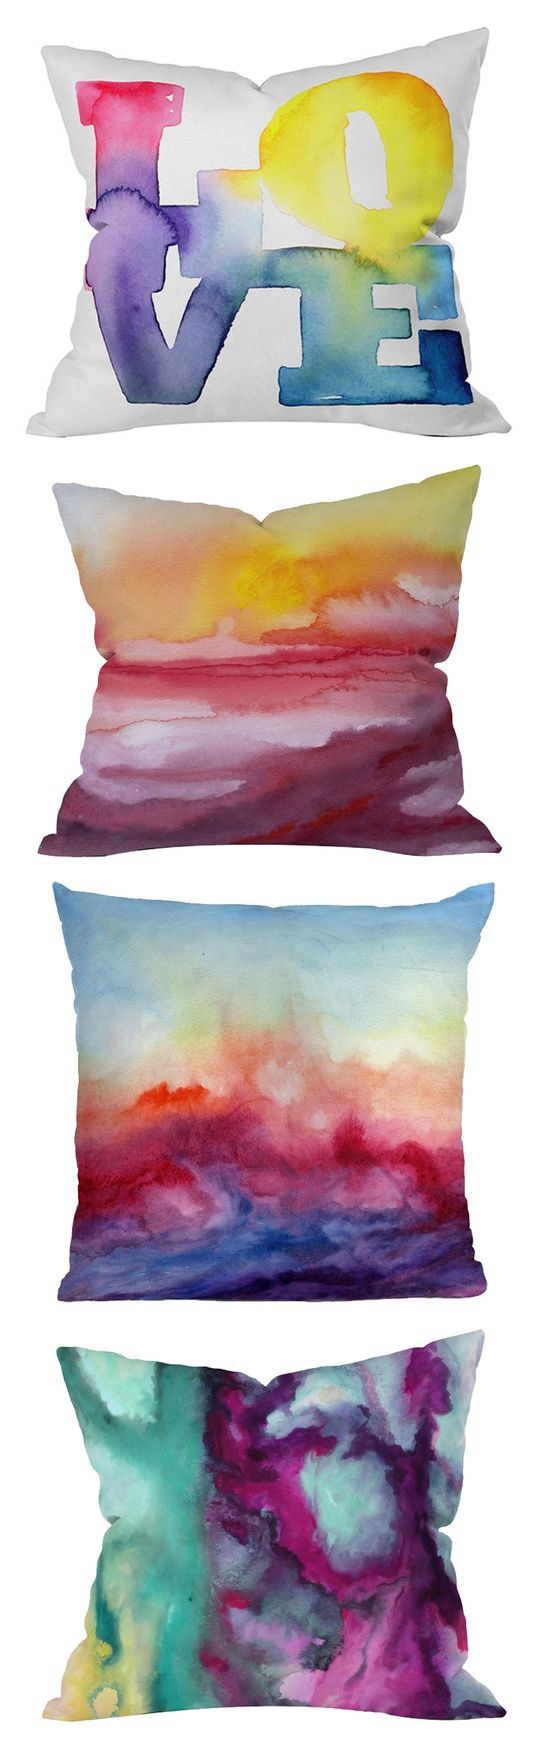 Watercolor pillows